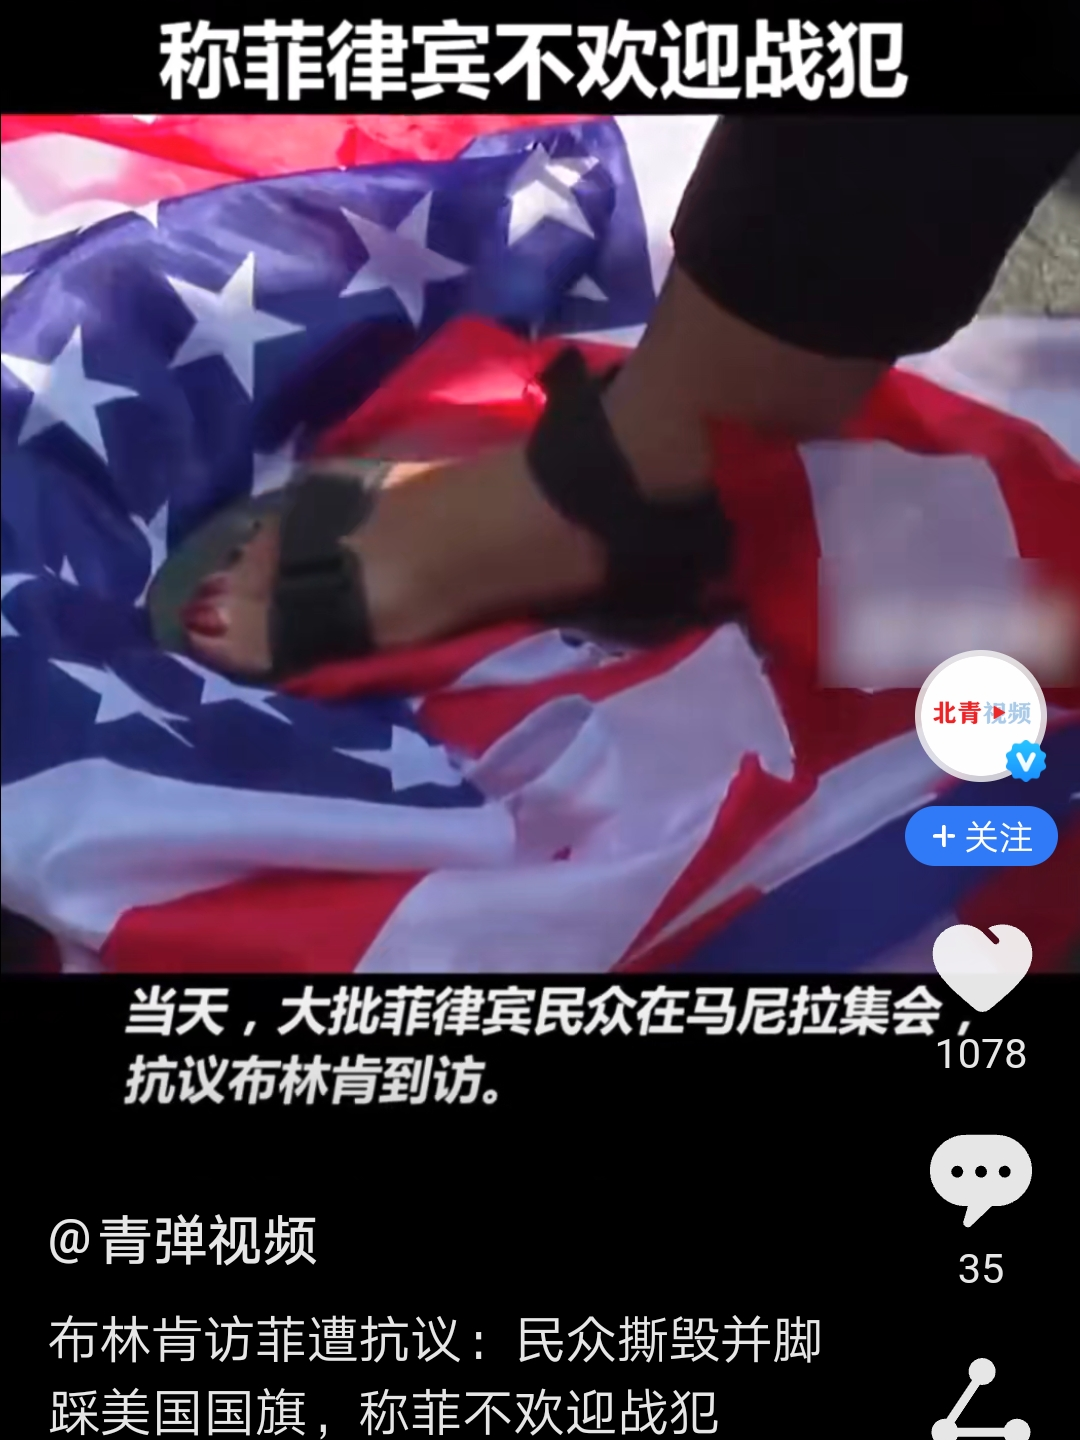 央视记者在燕郊采访爆燃事故遇阻,中国记协提出三问,如何看待此事?